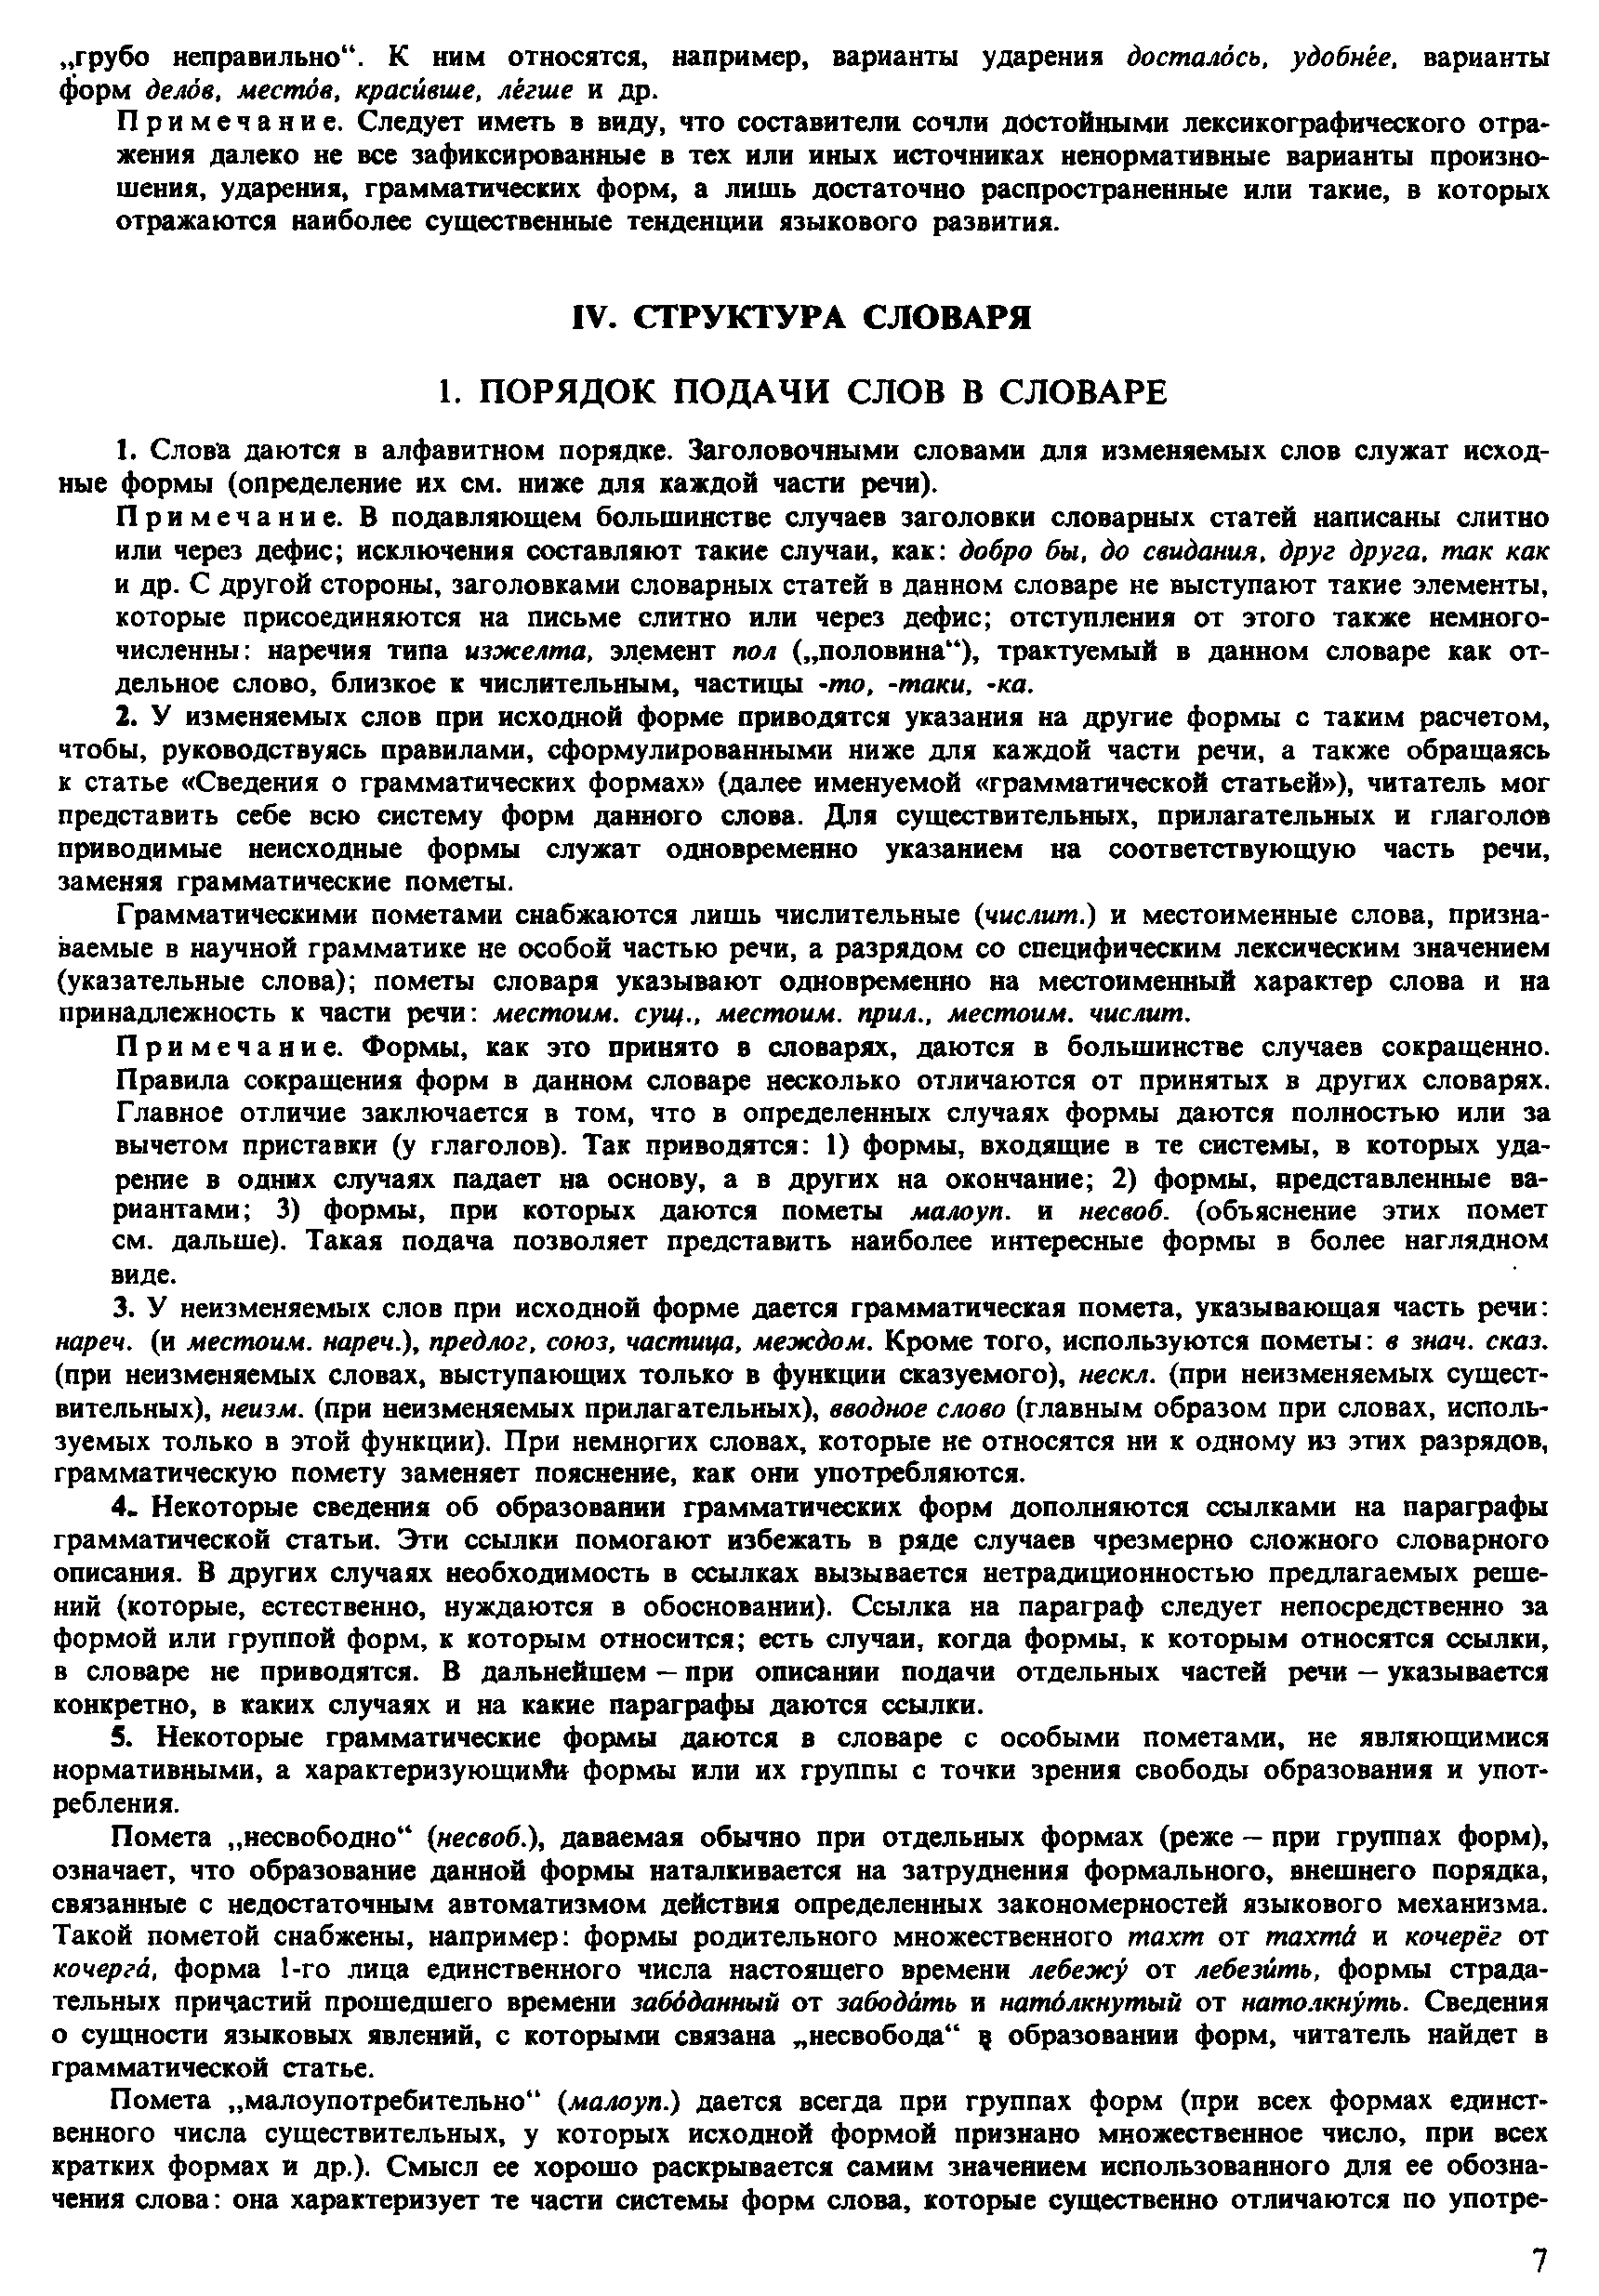 Фотокопия pdf / скан страницы 7 орфоэпического словаря под редакцией Аванесова (4 издание, 1988 год)